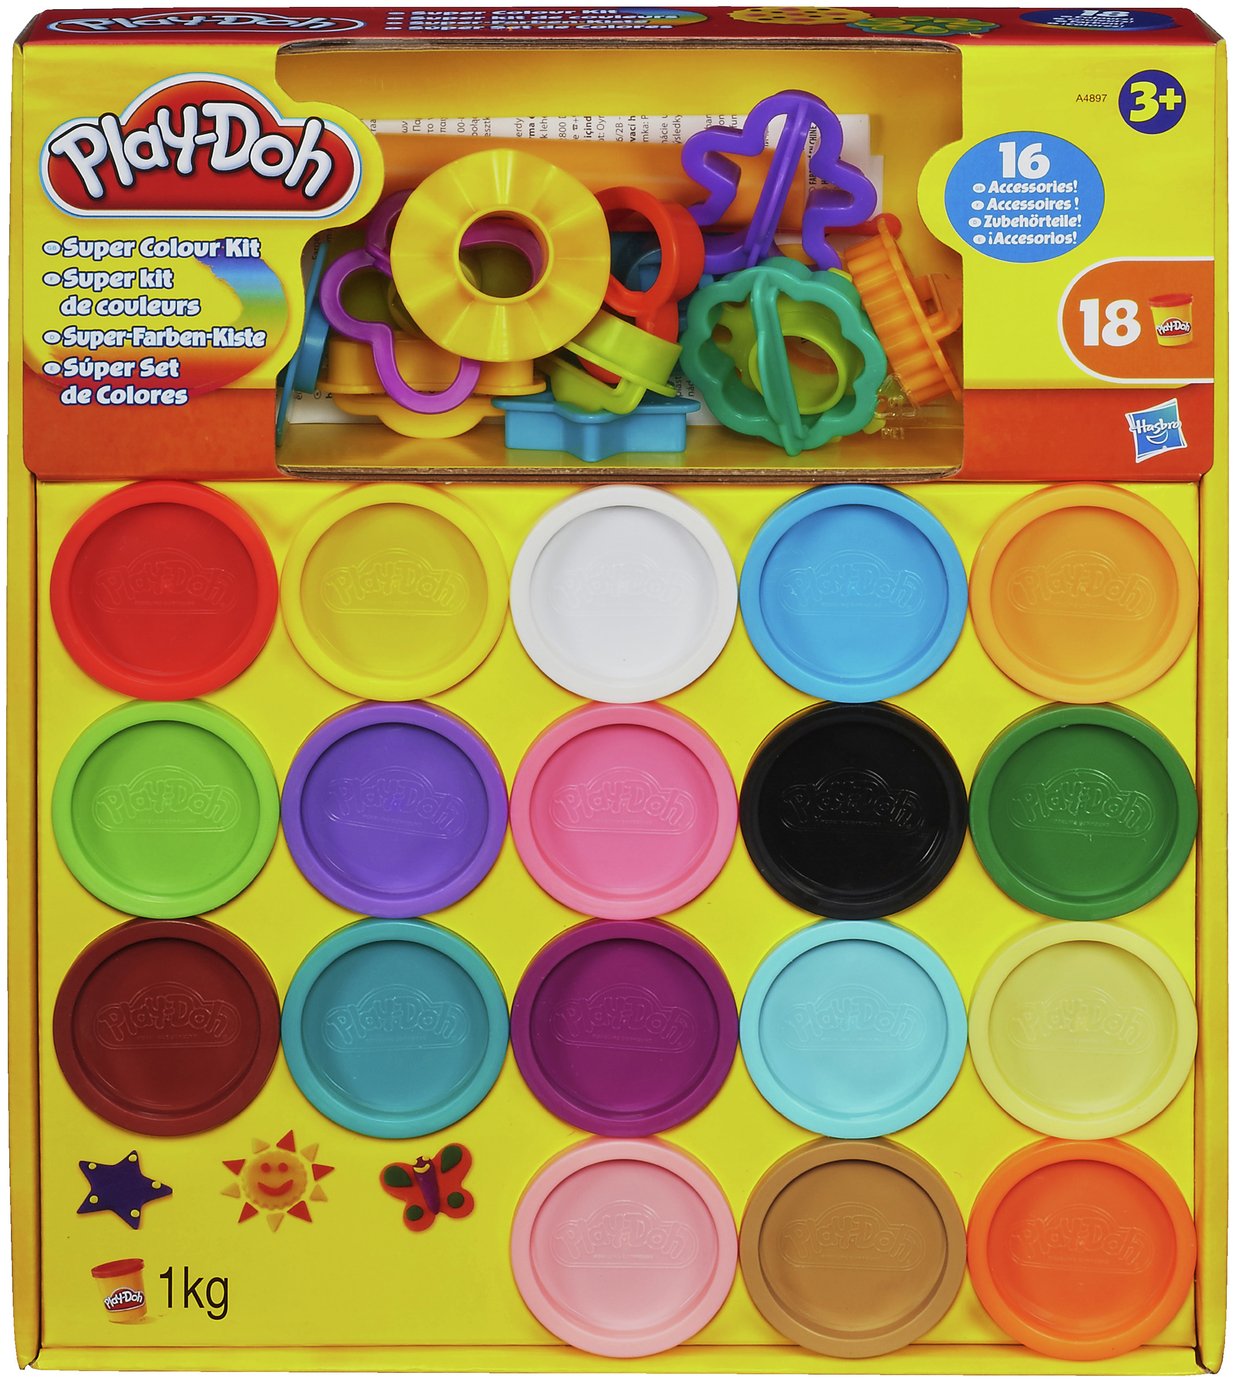 Play-Doh Super Colour Kit Review